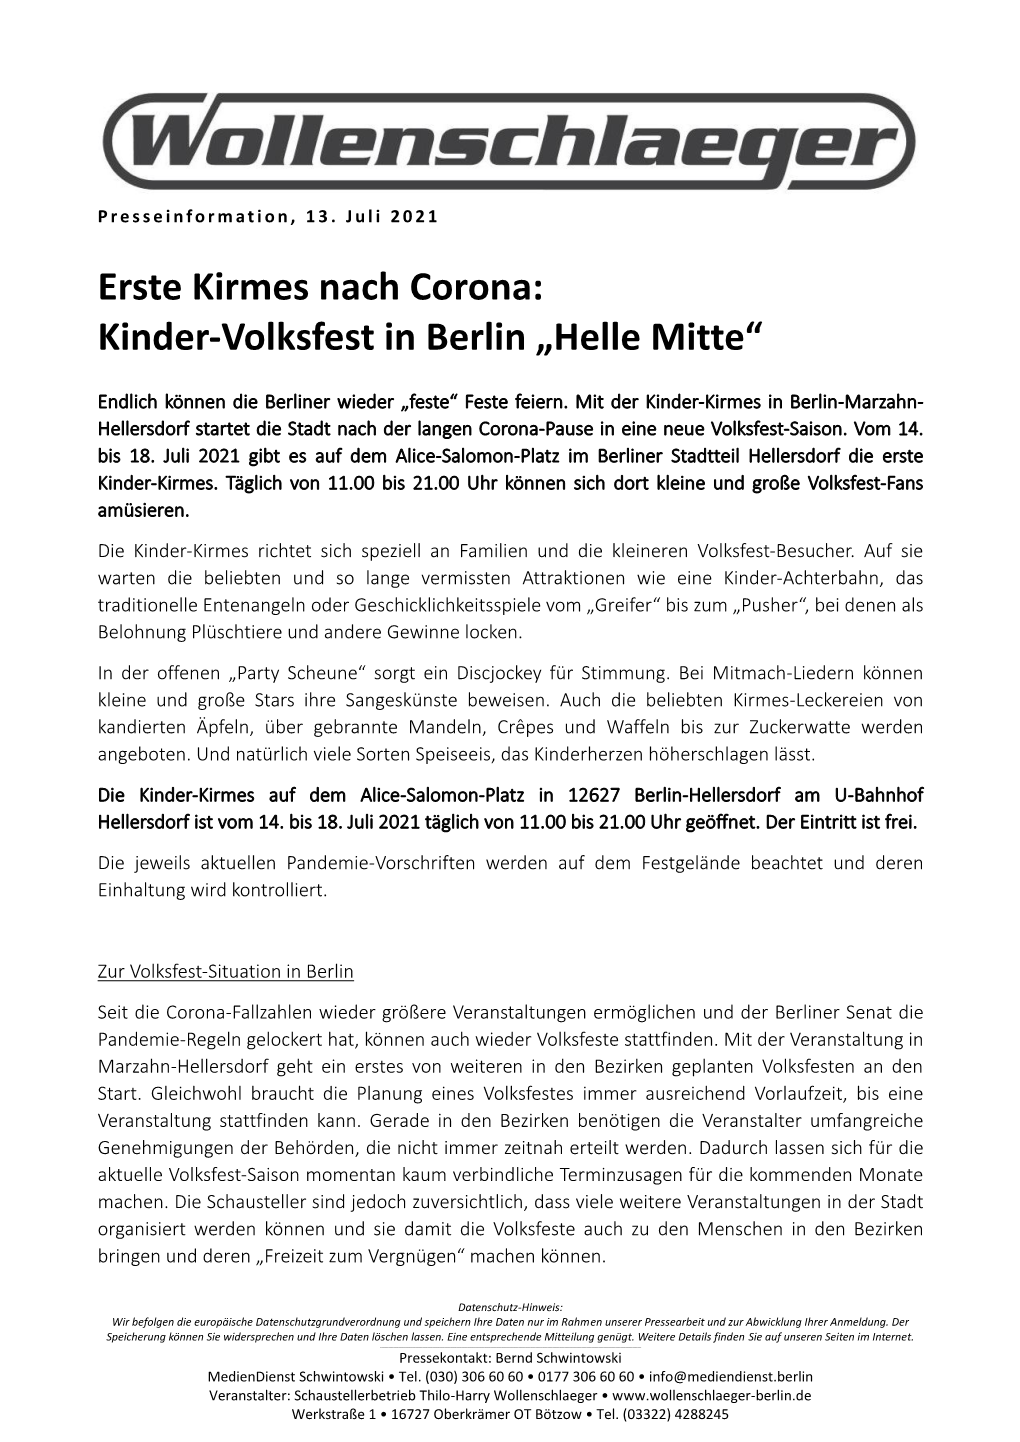 Erste Kirmes Nach Corona: Kinder-Volksfest in Berlin „Helle Mitte“